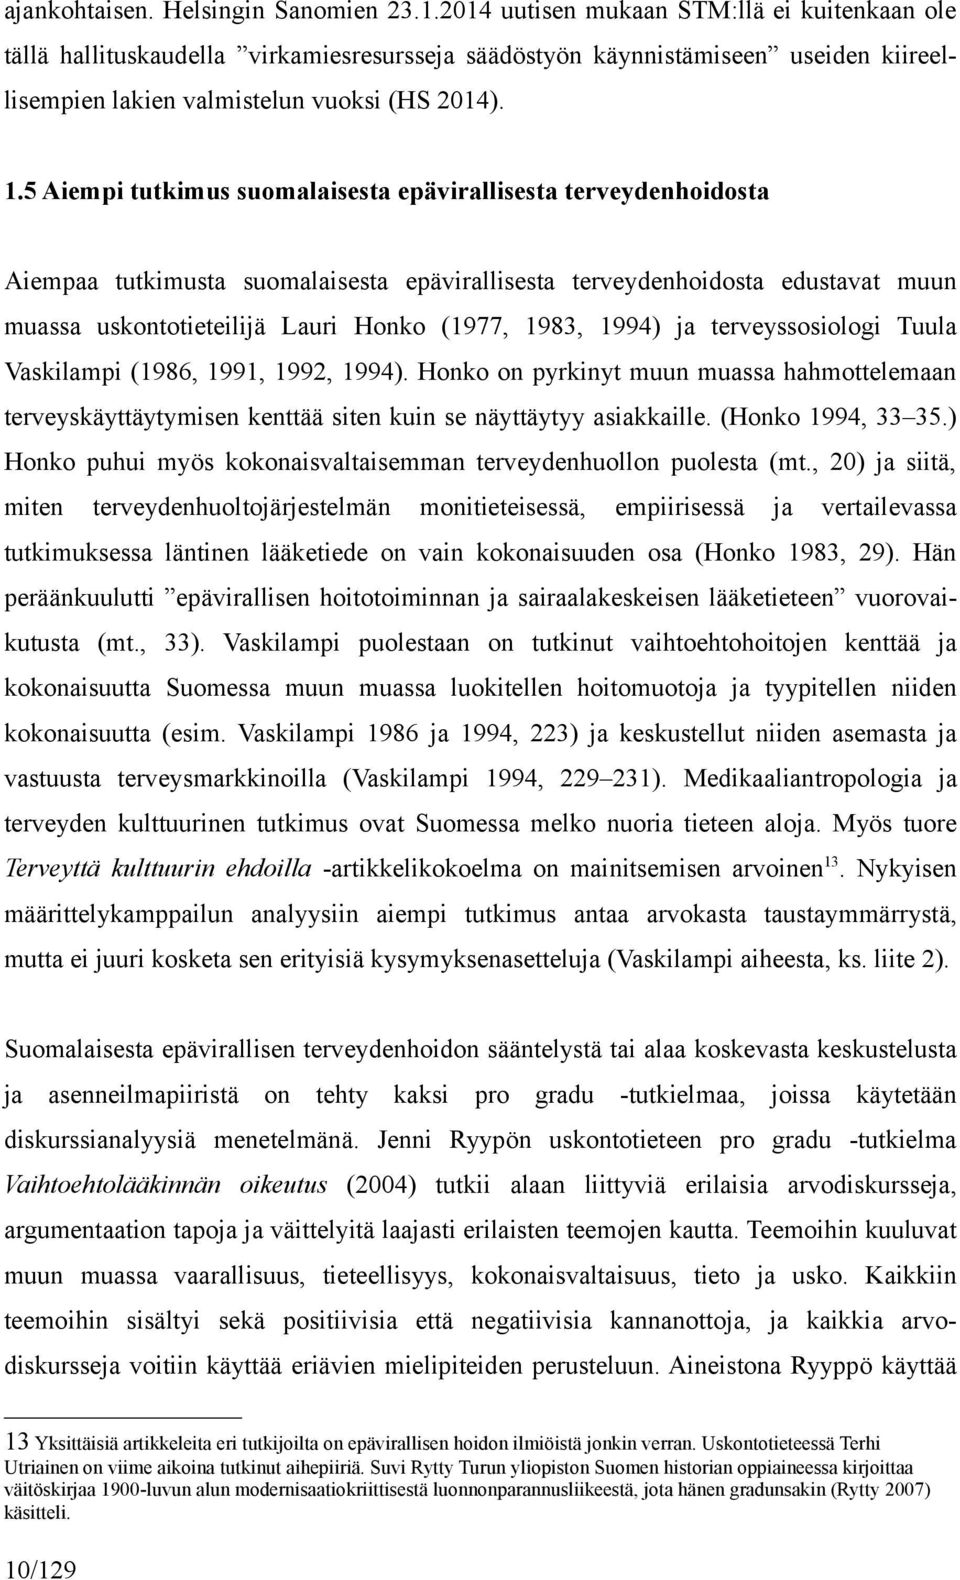 5 Aiempi tutkimus suomalaisesta epävirallisesta terveydenhoidosta Aiempaa tutkimusta suomalaisesta epävirallisesta terveydenhoidosta edustavat muun muassa uskontotieteilijä Lauri Honko (1977, 1983,